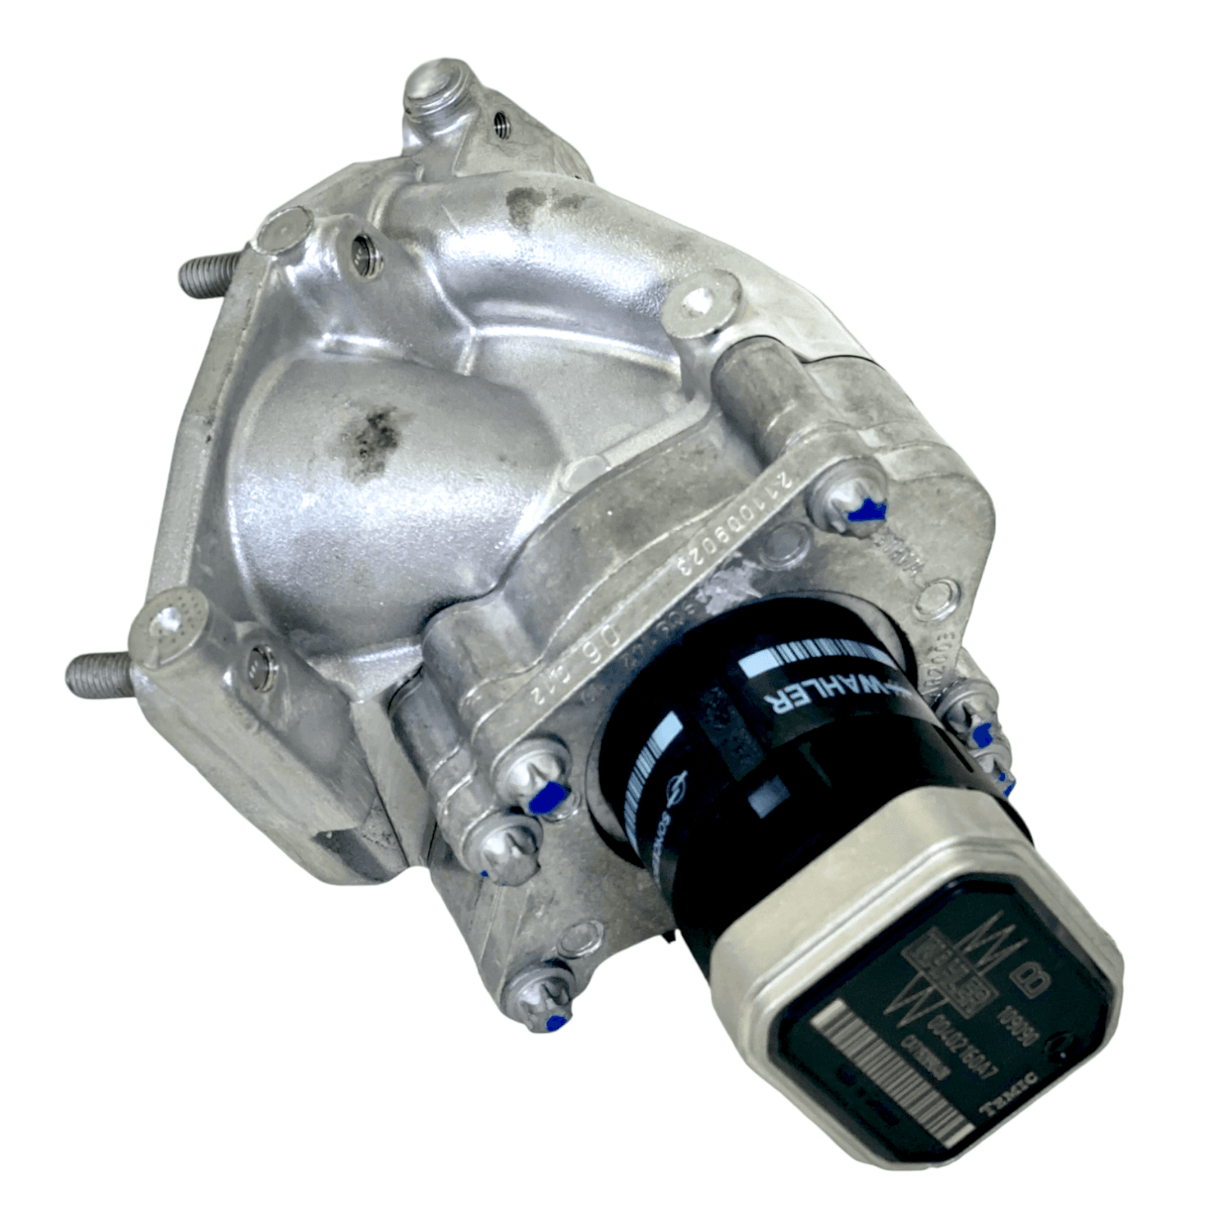 A9061420119 Genuine Detroit Diesel EGR Exhaust Gas Recirculation Valve - Truck To Trailer